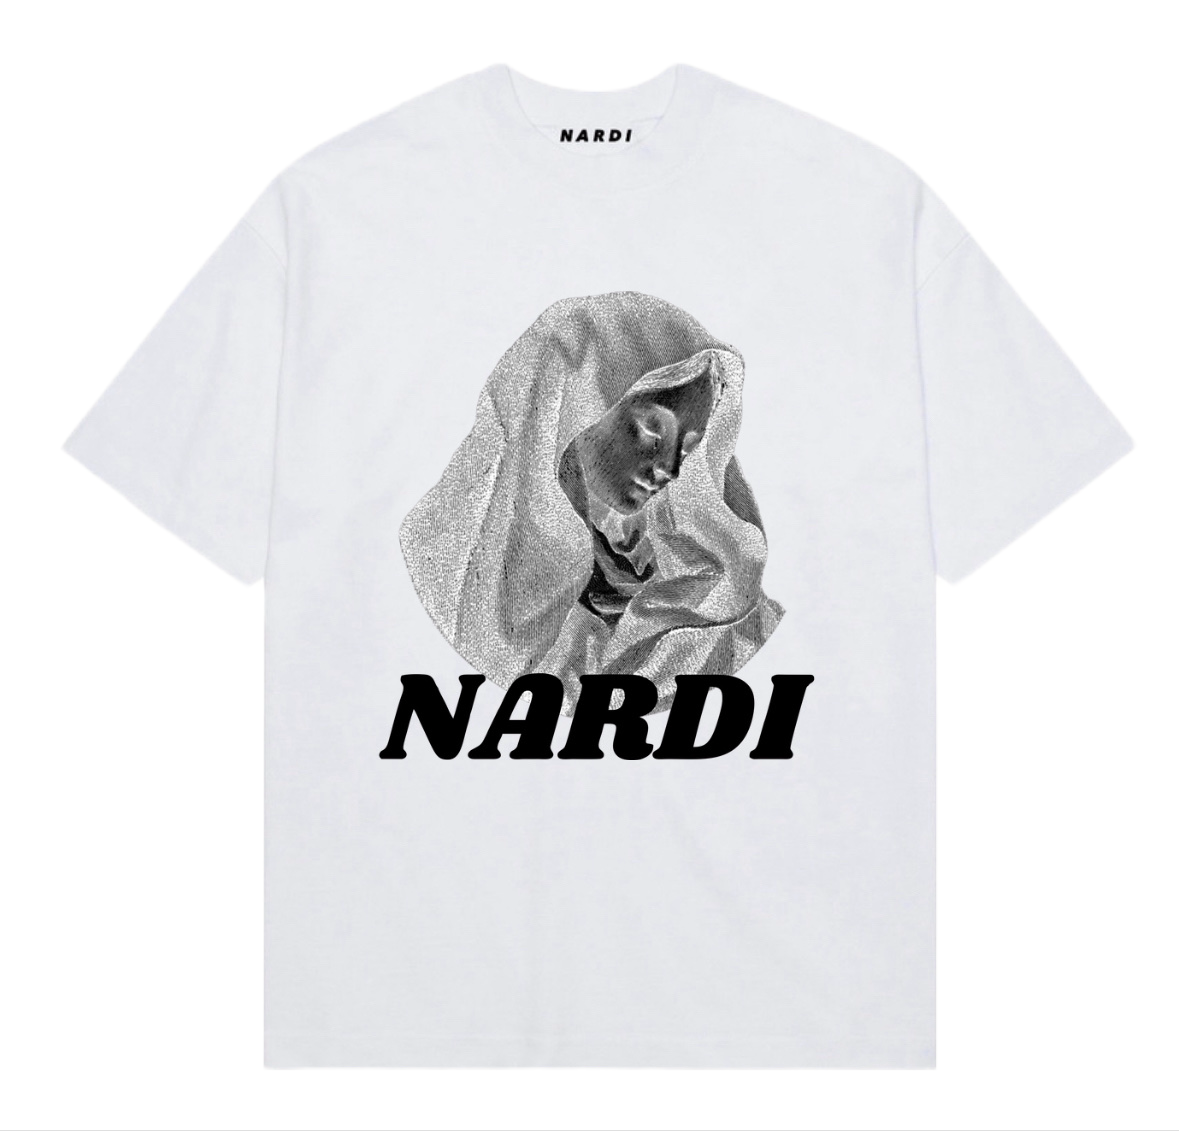 NARDI “VIRGIN MARY” T SHIRT